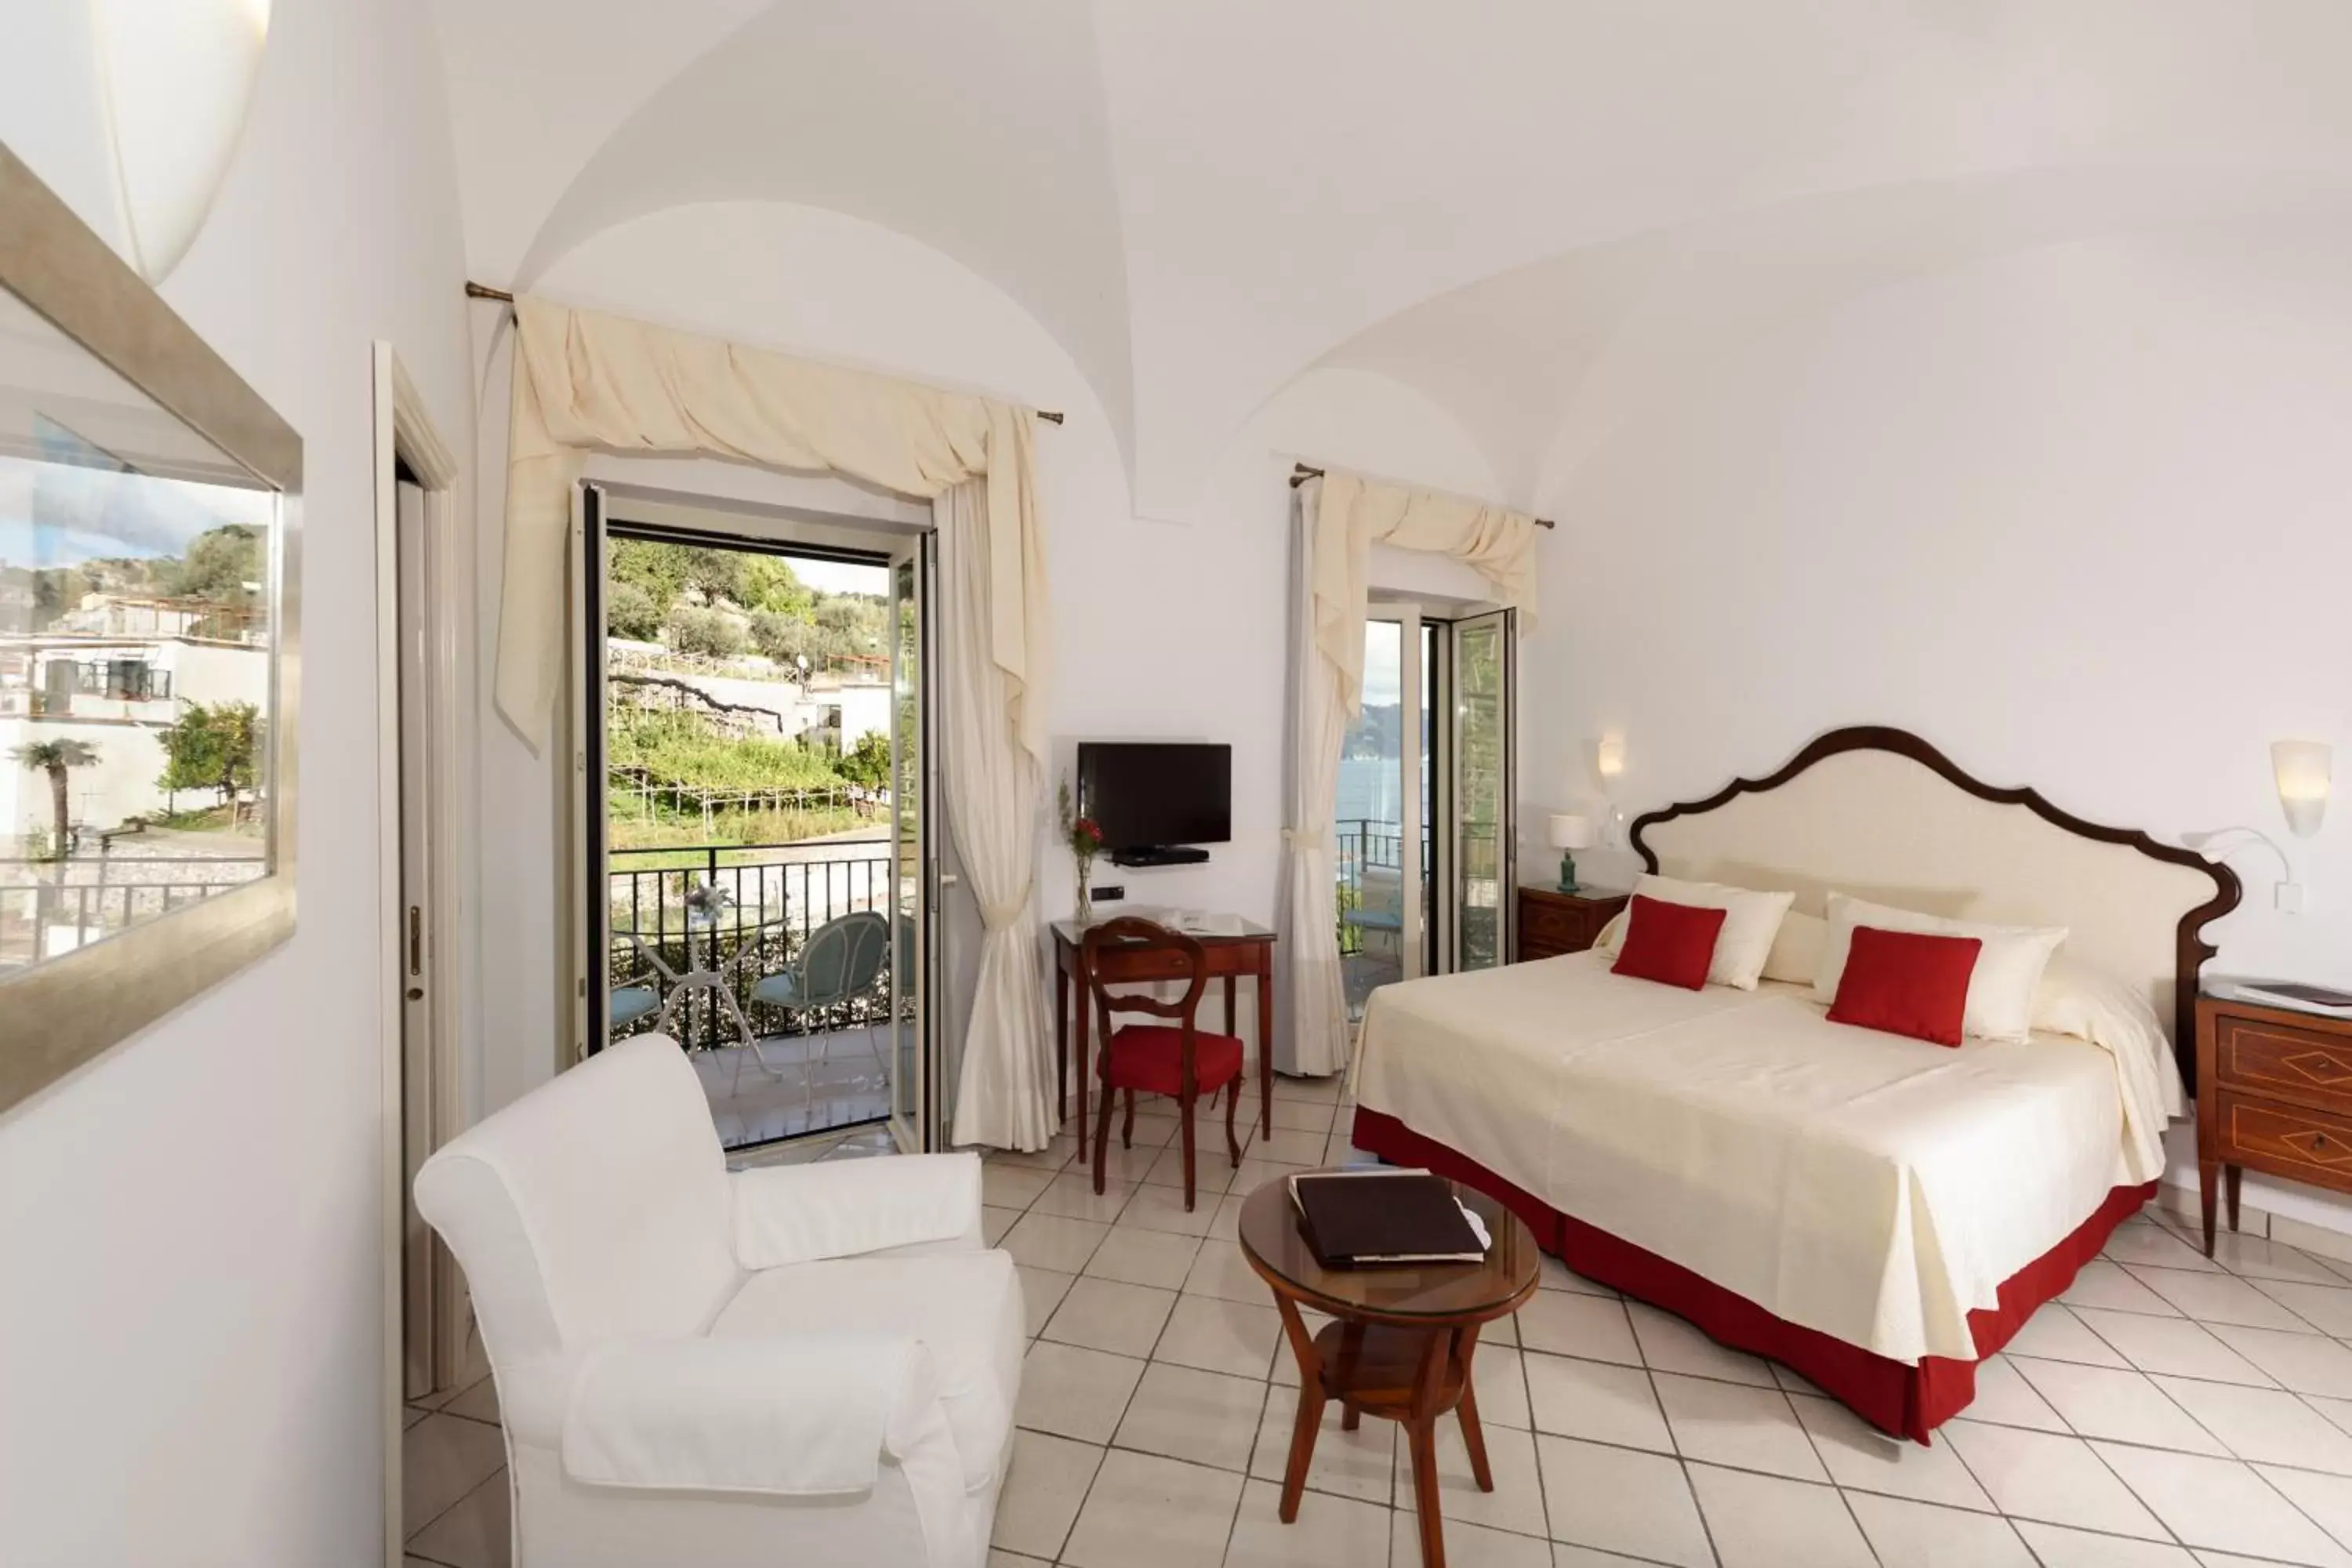 Bedroom in Hotel Santa Caterina